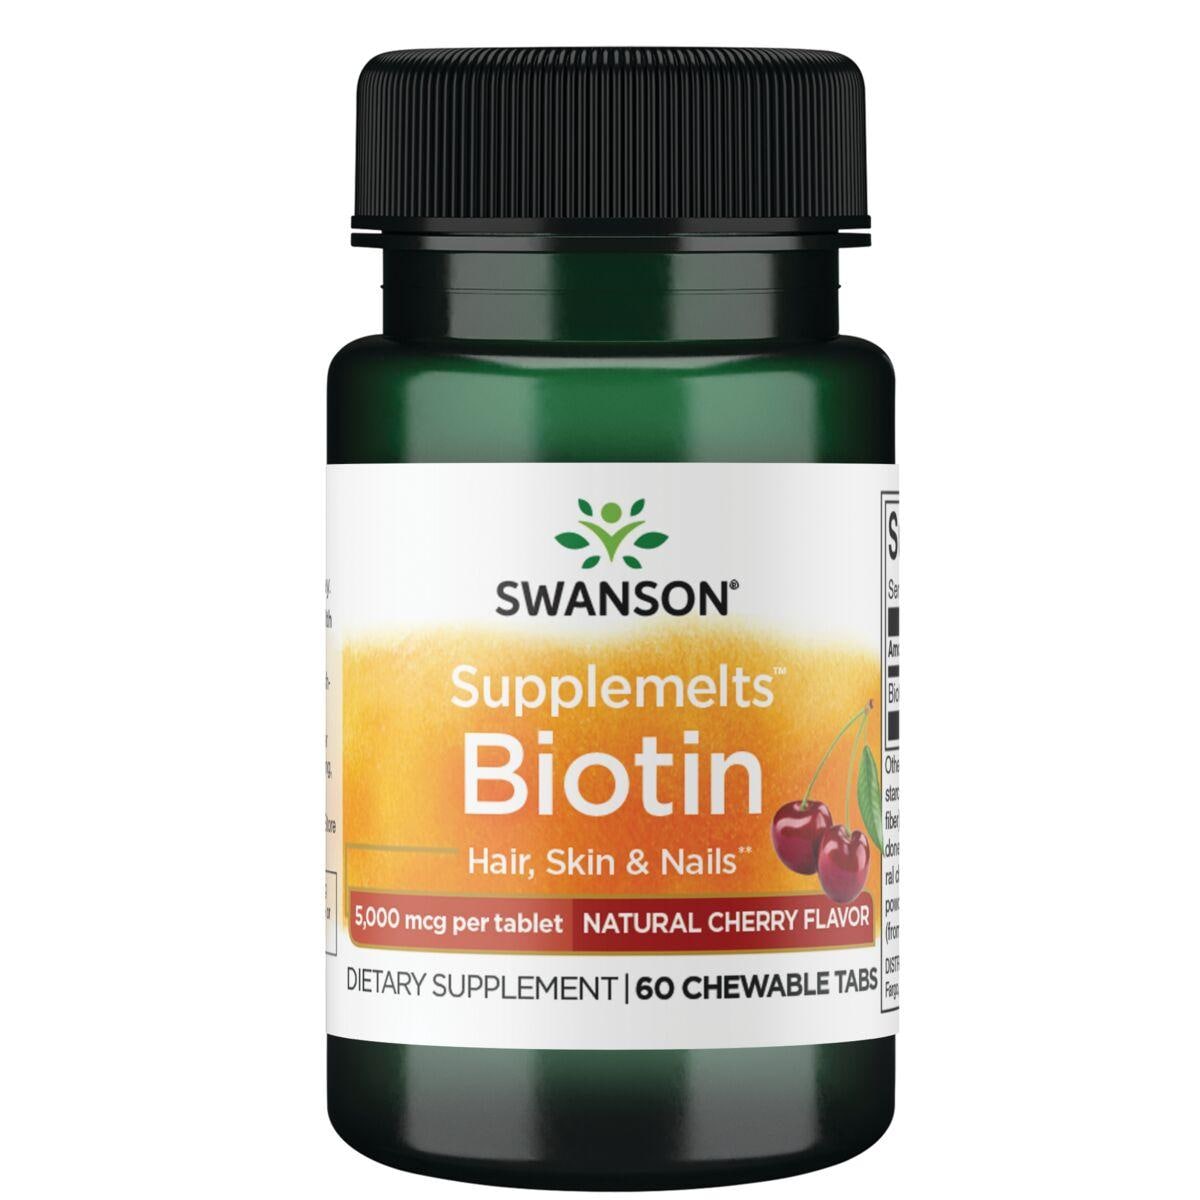 Swanson Premium Supplemelts Biotin - Natural Cherry Flavor Vitamin 5000 mcg 60 Chewables